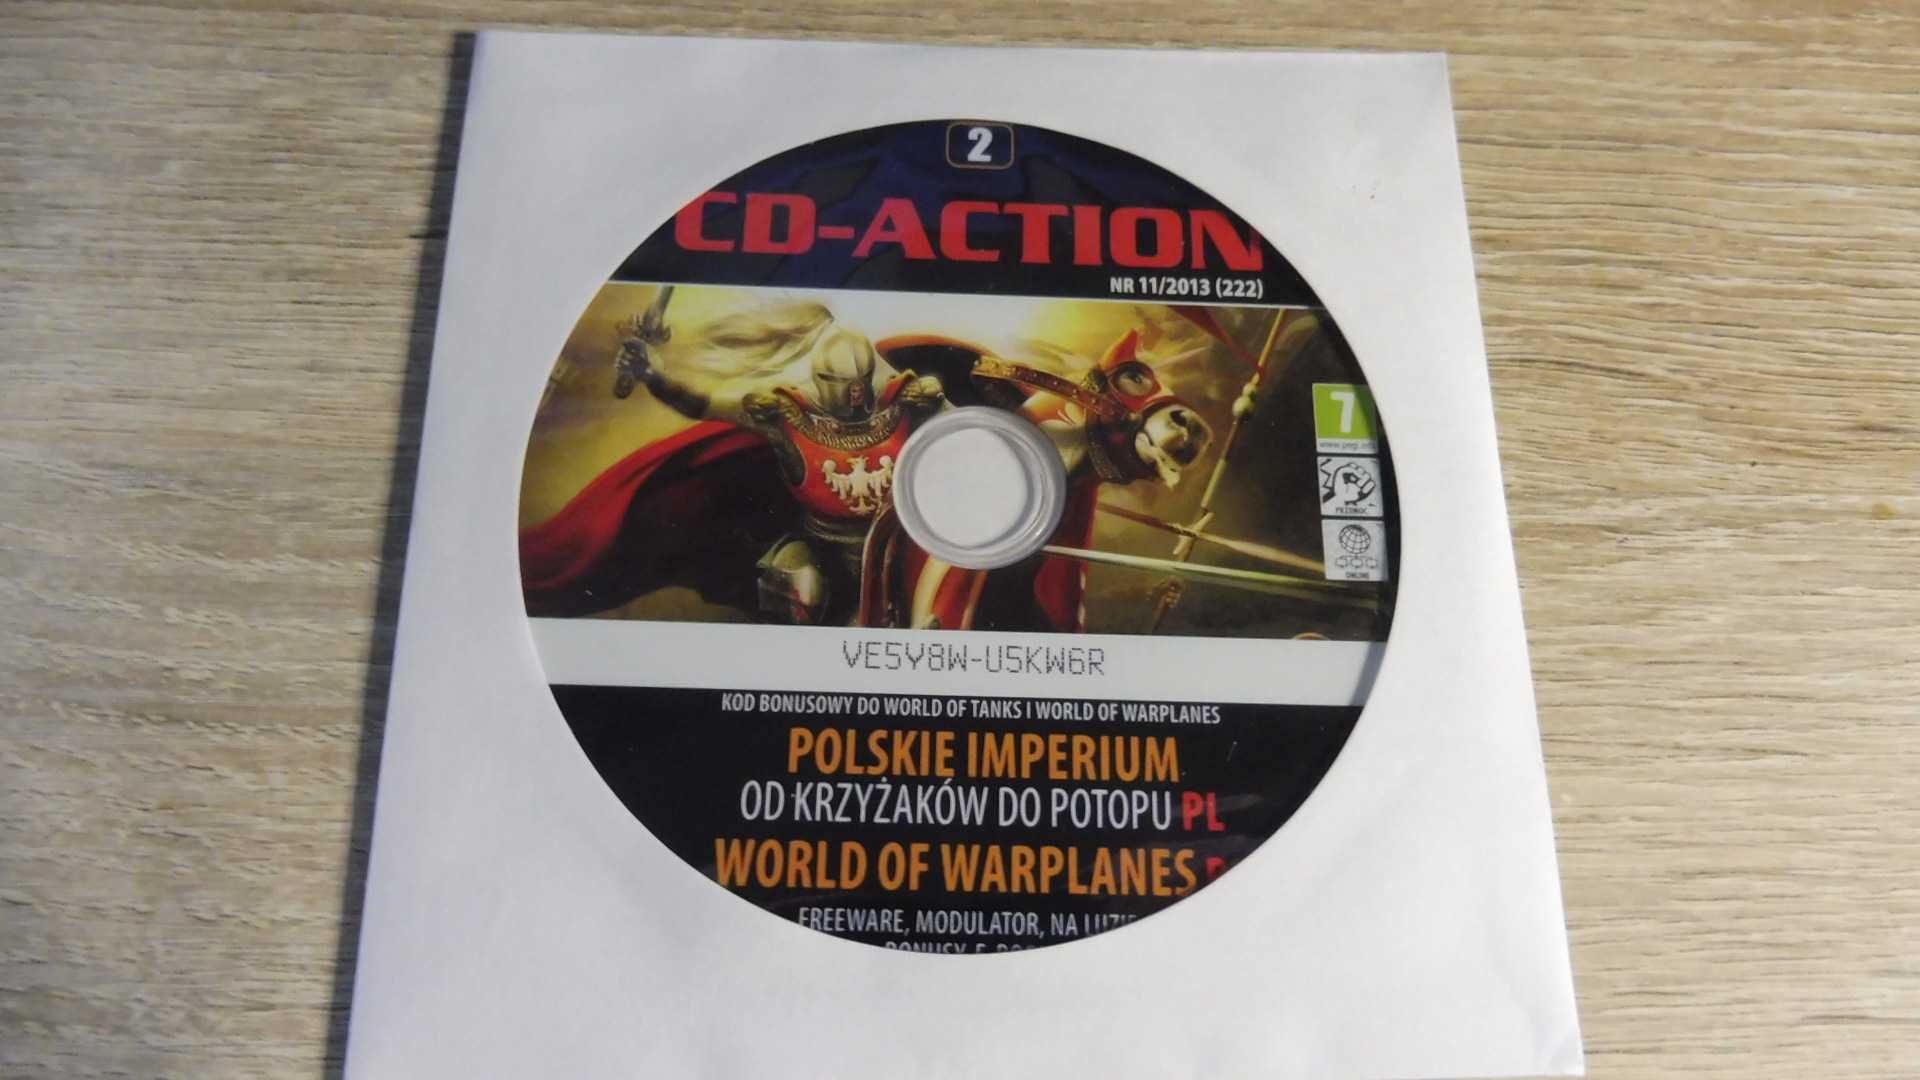 CD Action 11/2013 (222) - DVD 2 - Polskie imperium PL